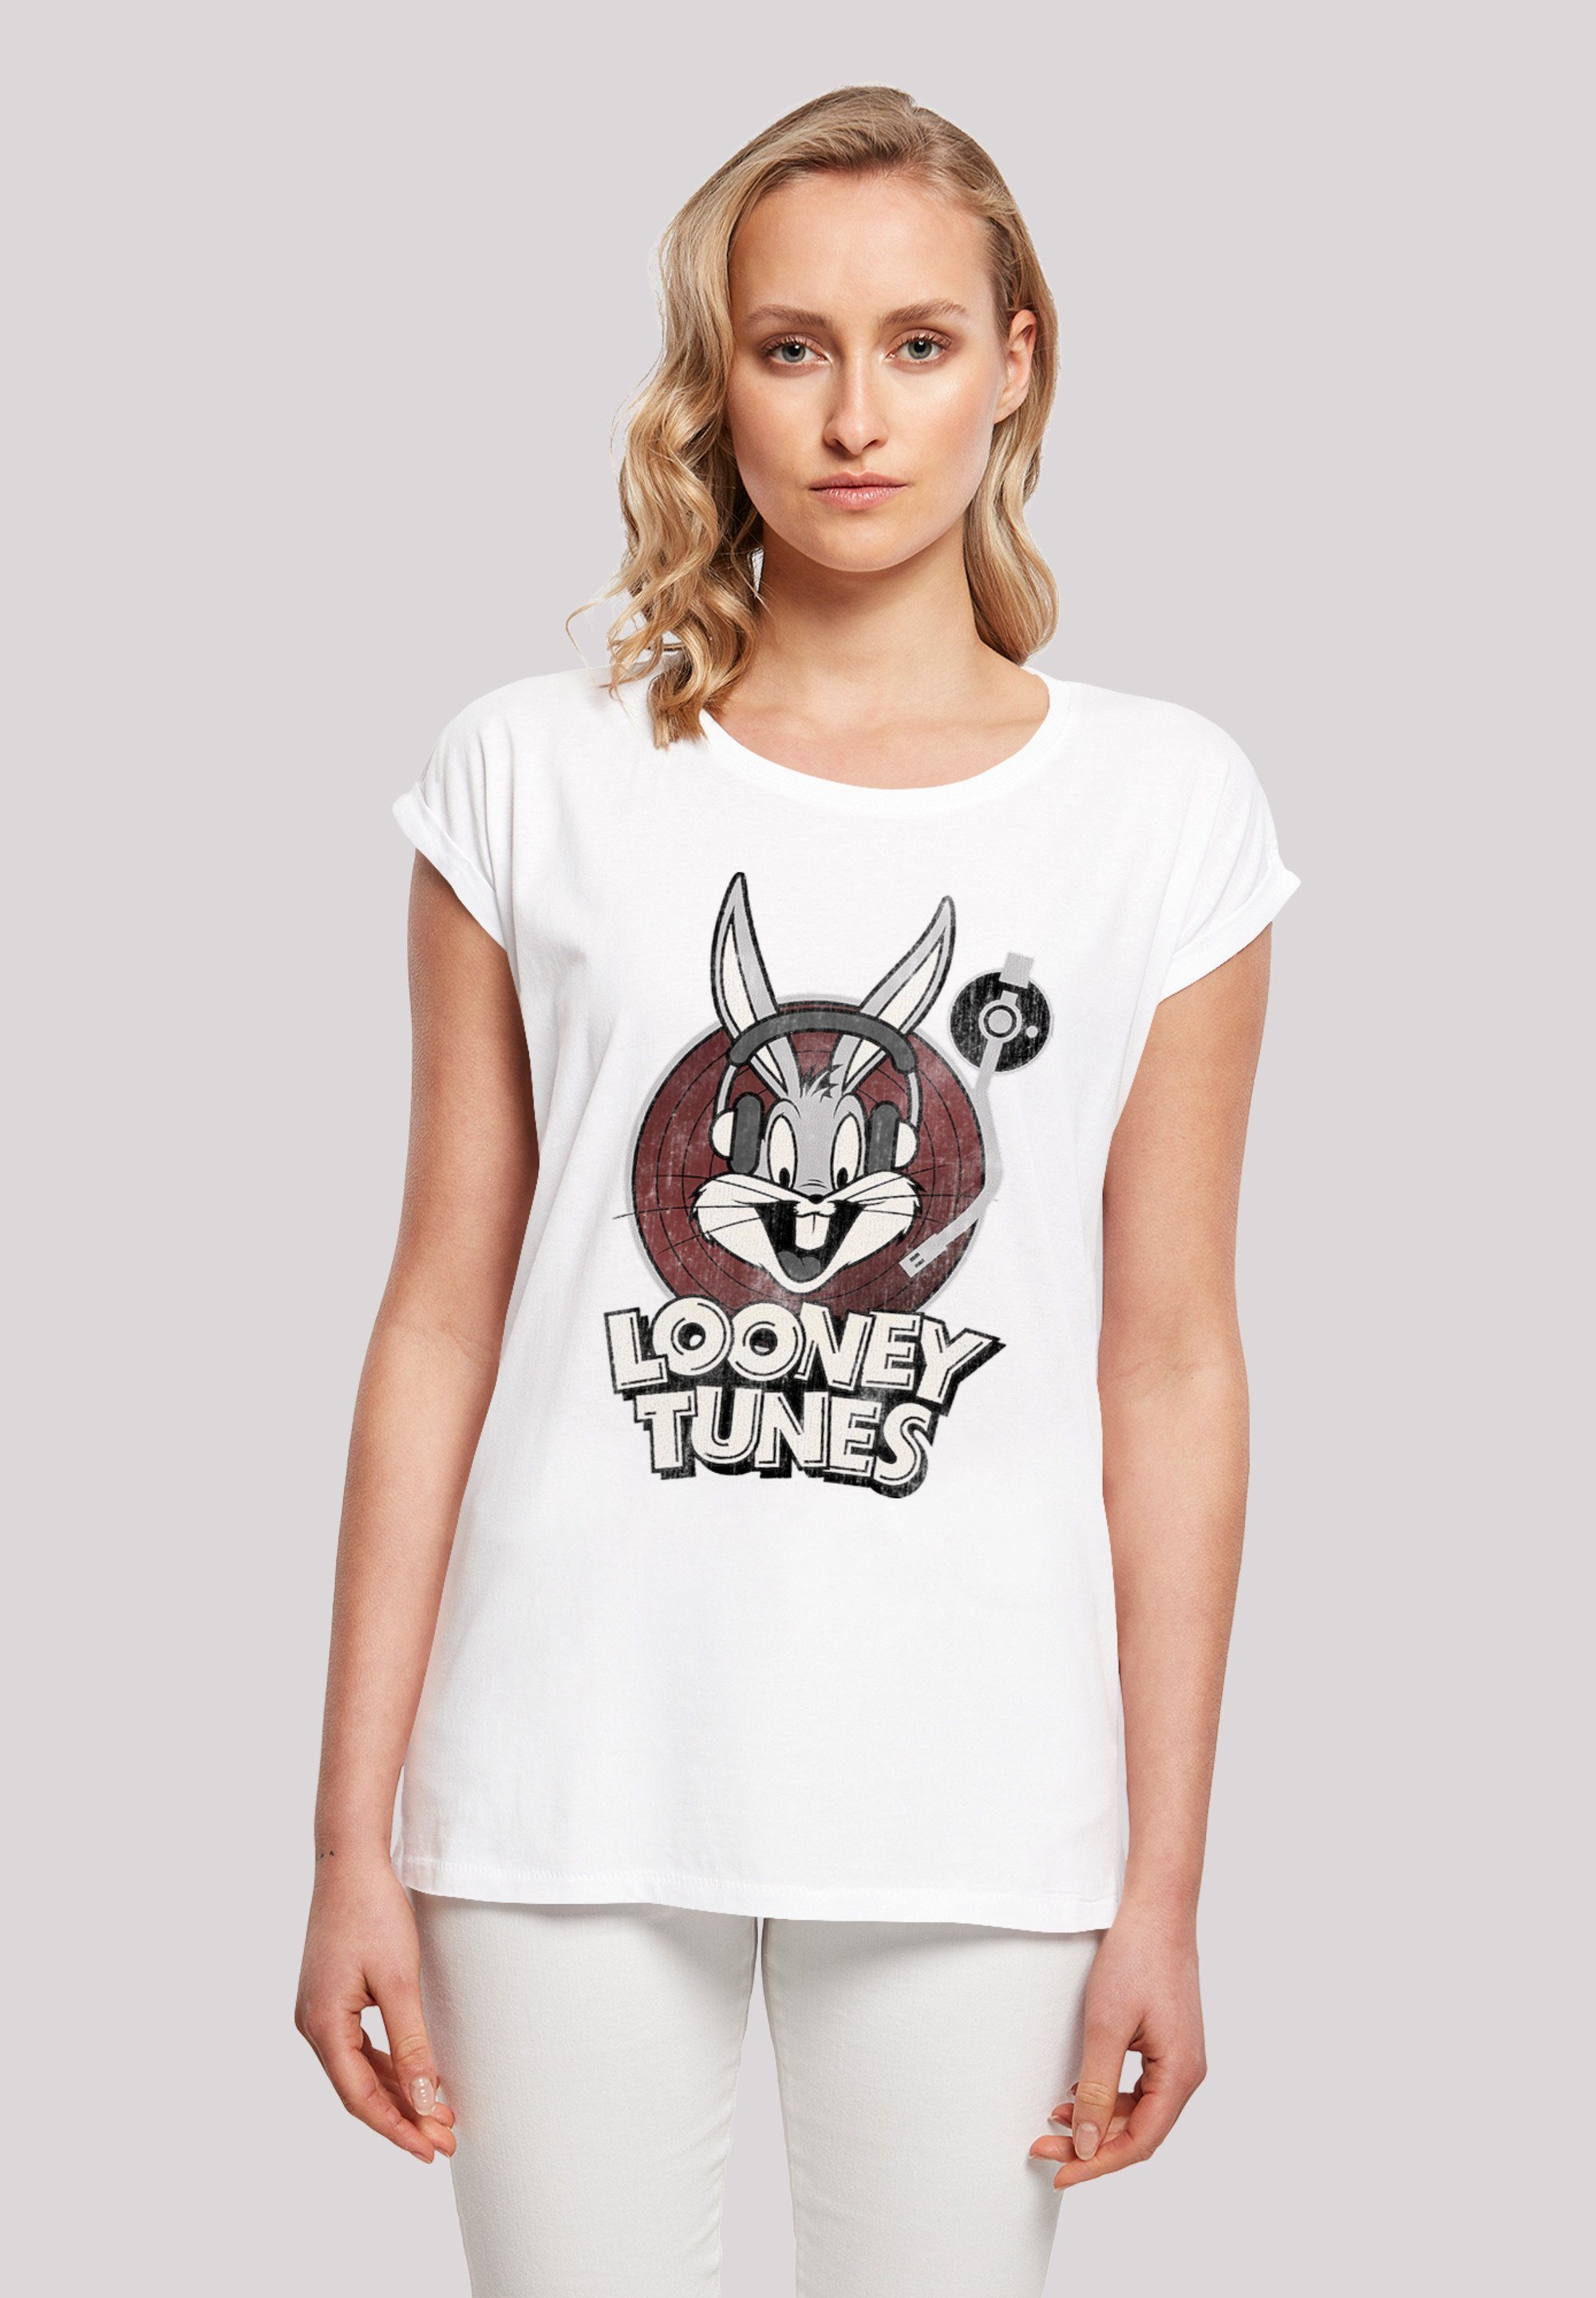 Tunes Bunny\' Tragekomfort T-Shirt F4NT4STIC mit Baumwollstoff weicher hohem Print, Bugs Sehr Looney